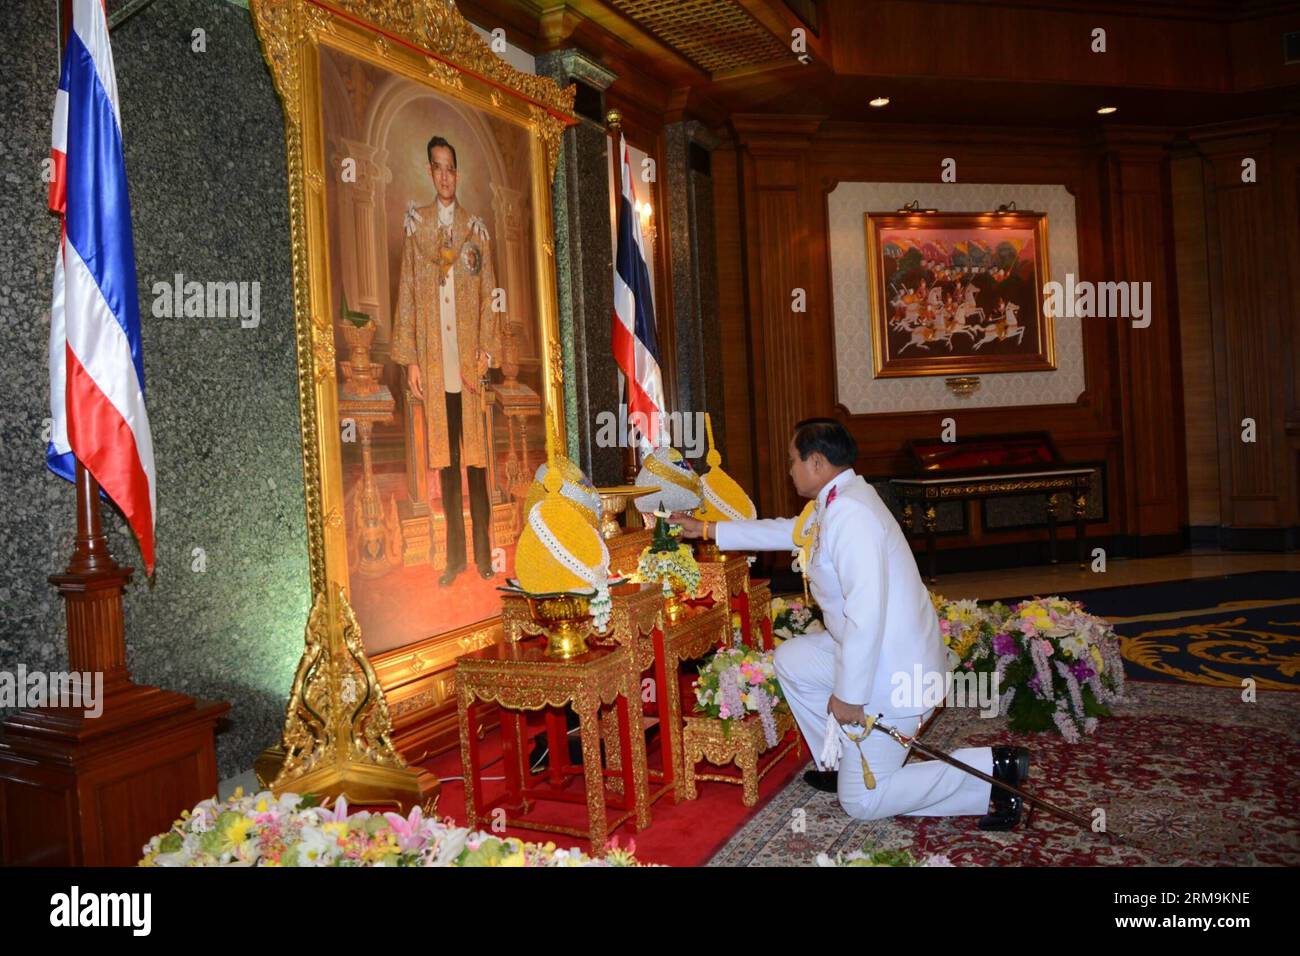 (140526) -- BANGKOK, 26 maggio 2014 (Xinhua) -- il capo dell'esercito thailandese, il generale Prayuth Chan-ocha, riceve un'approvazione reale come capo della giunta di fronte a un ritratto del re tailandese Bhumibol Adulyadej presso il quartier generale dell'esercito reale tailandese a Bangkok, Thailandia, il 26 maggio 2014. Il capo dell'esercito thailandese, il generale Prayuth Chan-ocha, è stato approvato dal monarca thailandese come capo del Consiglio nazionale per la pace e l'ordine, che la scorsa settimana ha organizzato un colpo di stato militare per spodestare un governo eletto custode. (Xinhua/Rachen Sageamsak/Pool) THAILANDIA-BANGKOK-ARMY CHIEF PUBLICATIONxNOTxINxCHN Bangkok maggio 26 2014 XINHUA Thai Army Chief GE Foto Stock